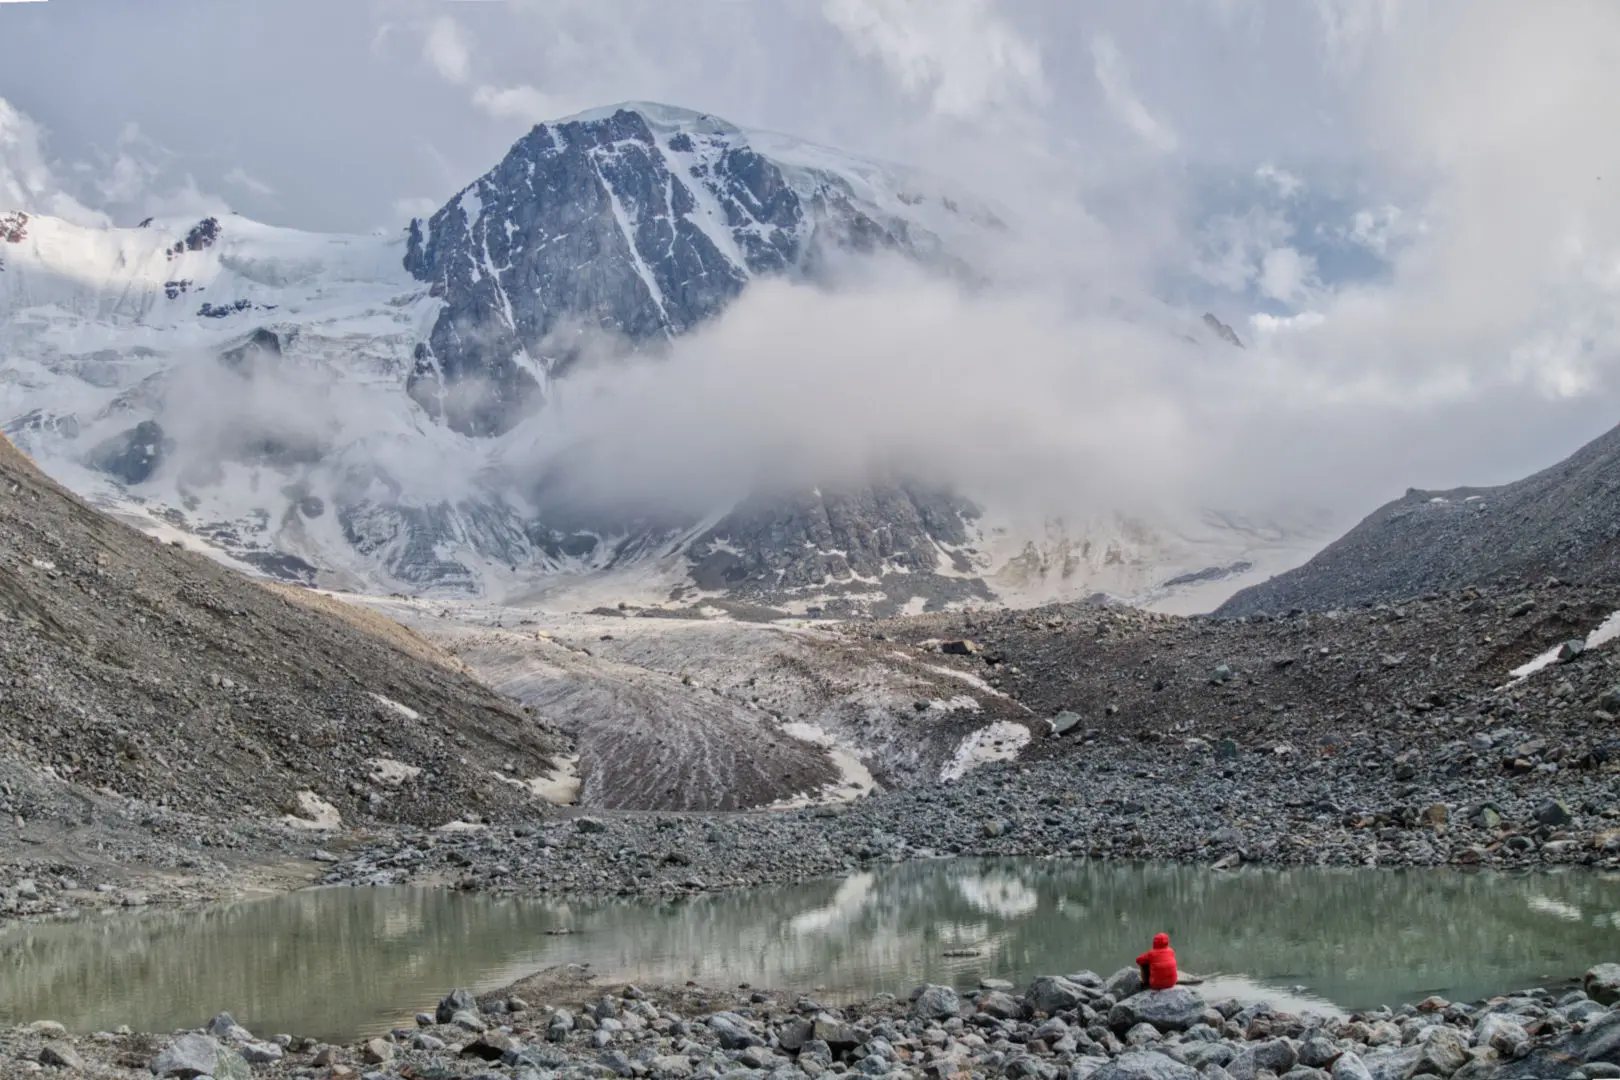 маршрут першого сходження на північну стіну гори Тургень (4410 м), 900 метрів, AI3, M4. Фото Кирило Білоцерковський